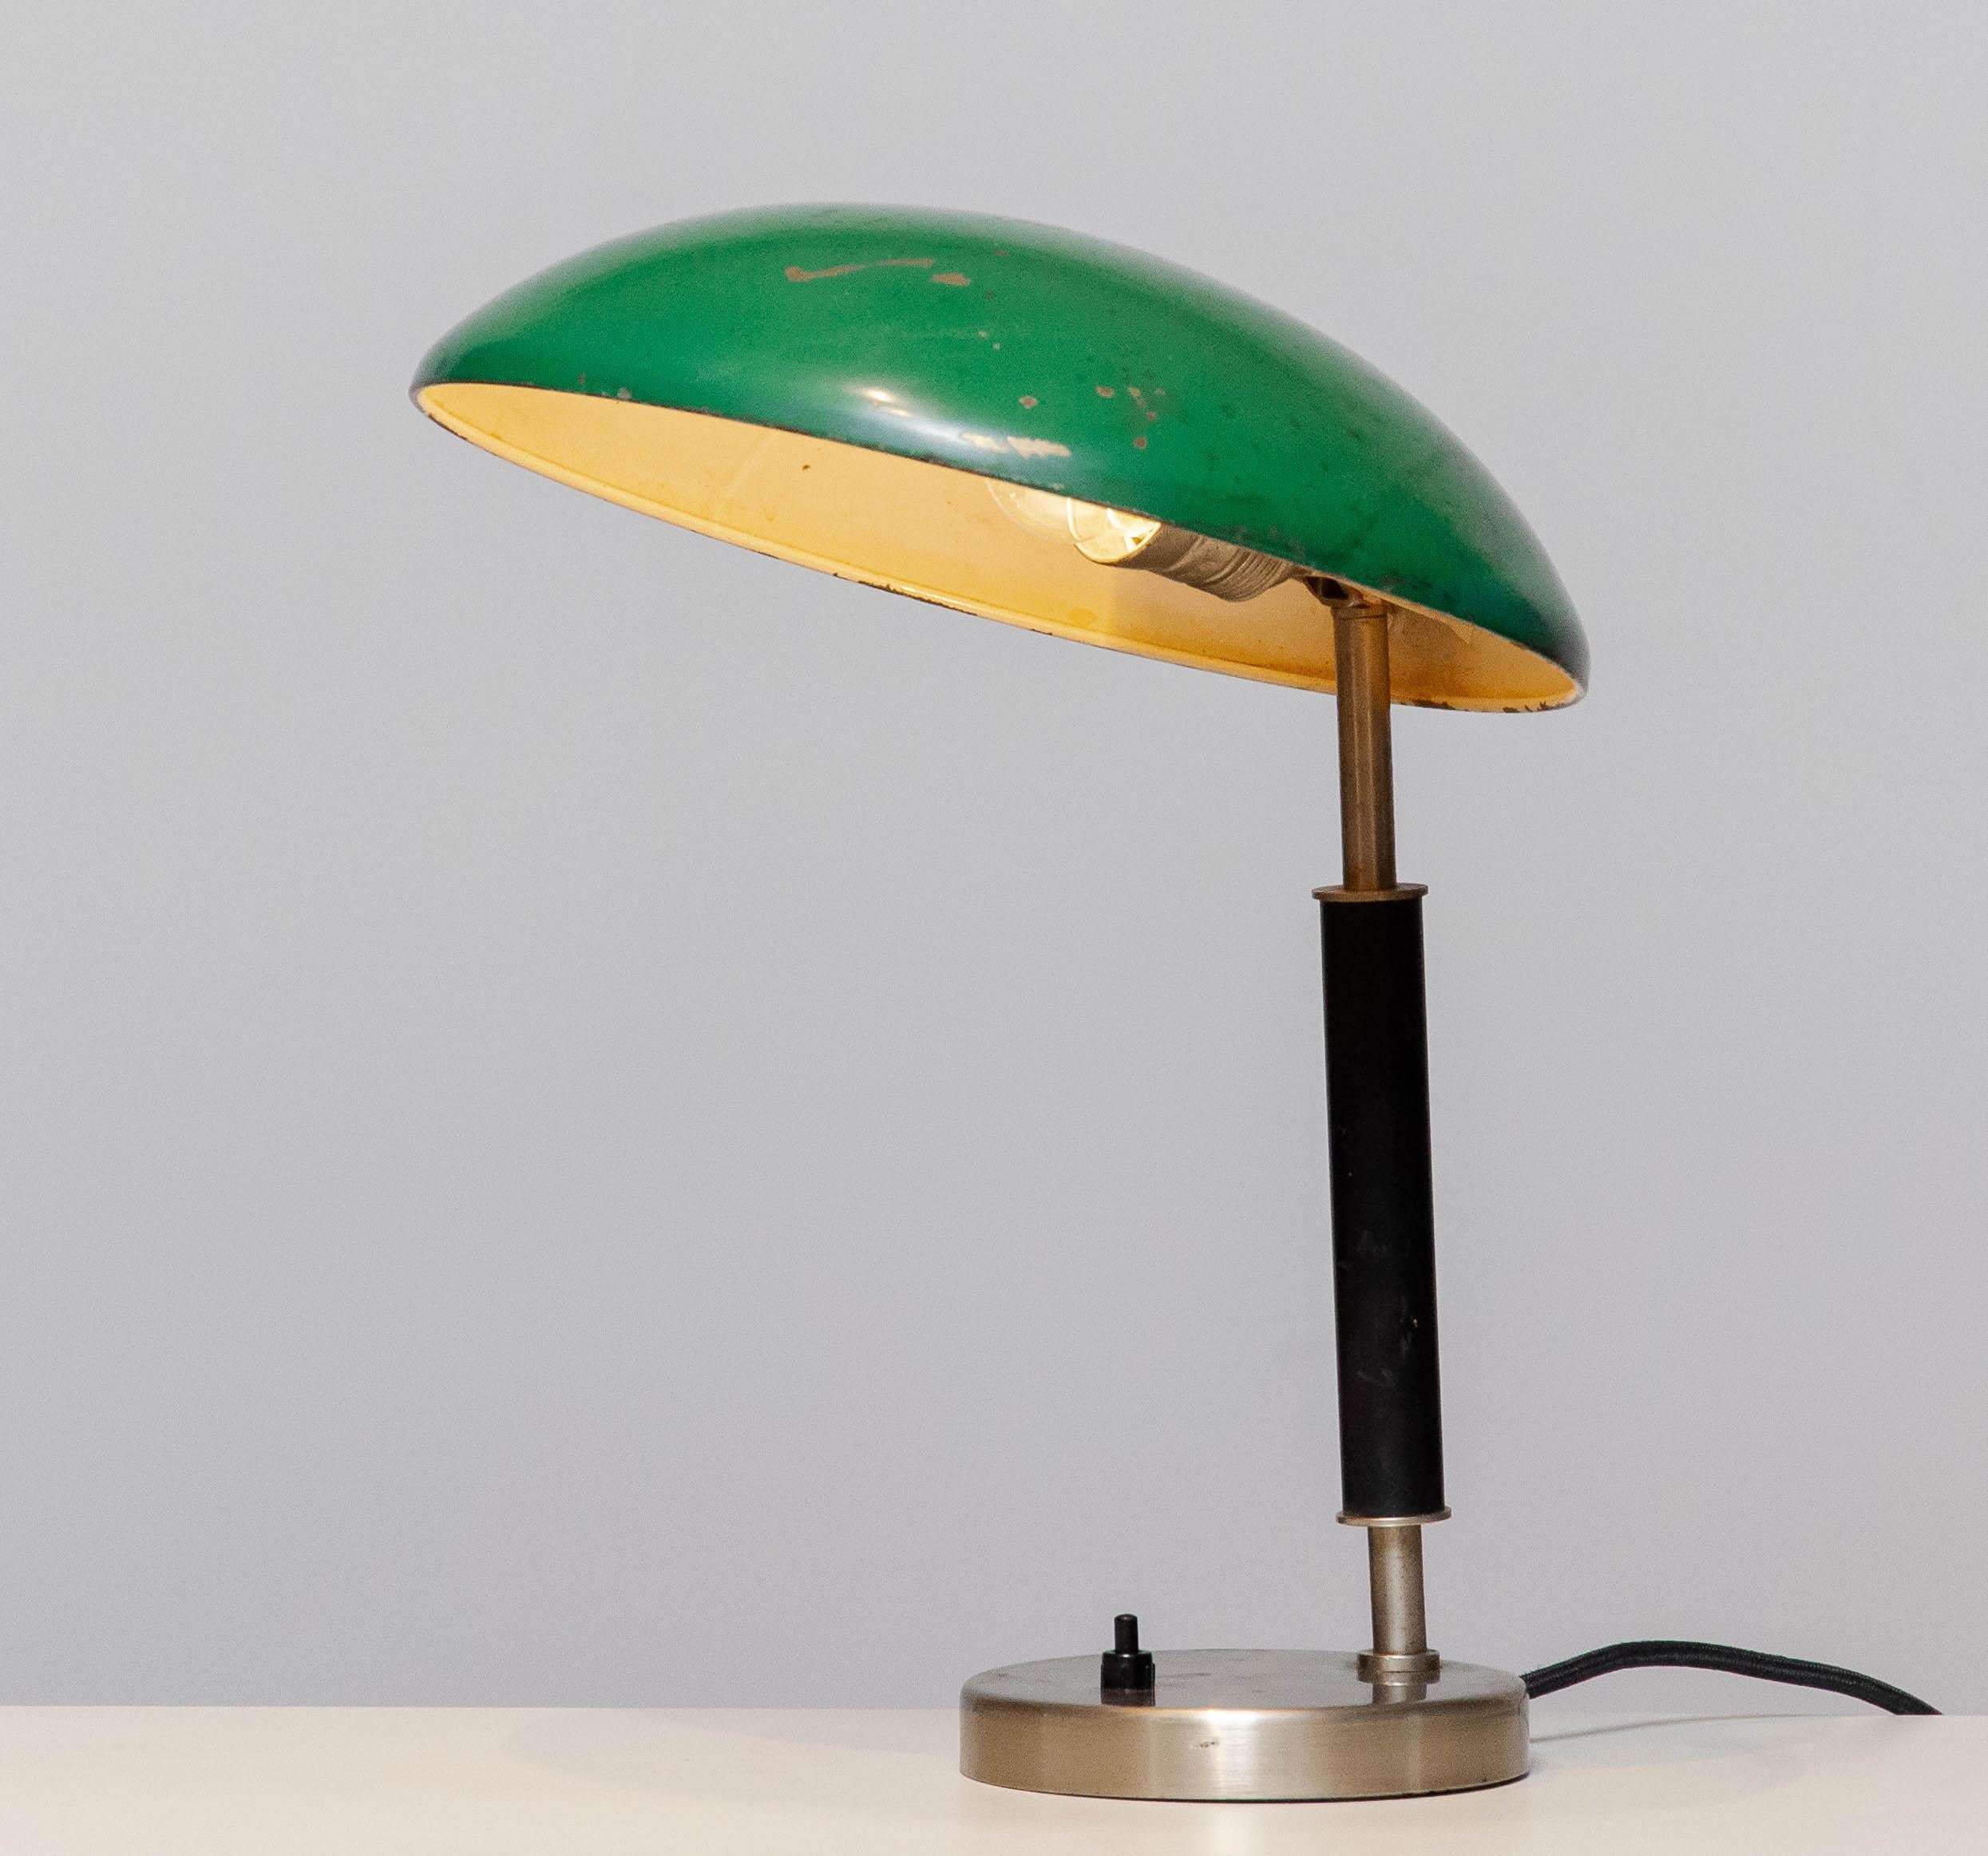 Magnifique lampe de table / lampe de bureau industrielle des années 1930 conçue par Harald Notini pour Arvid Böhlmarks Lampfabrik AB Stockholm Suède.
L'abat-jour laqué vert est en laiton et le couvercle en métal transparent sur la base cache un pied